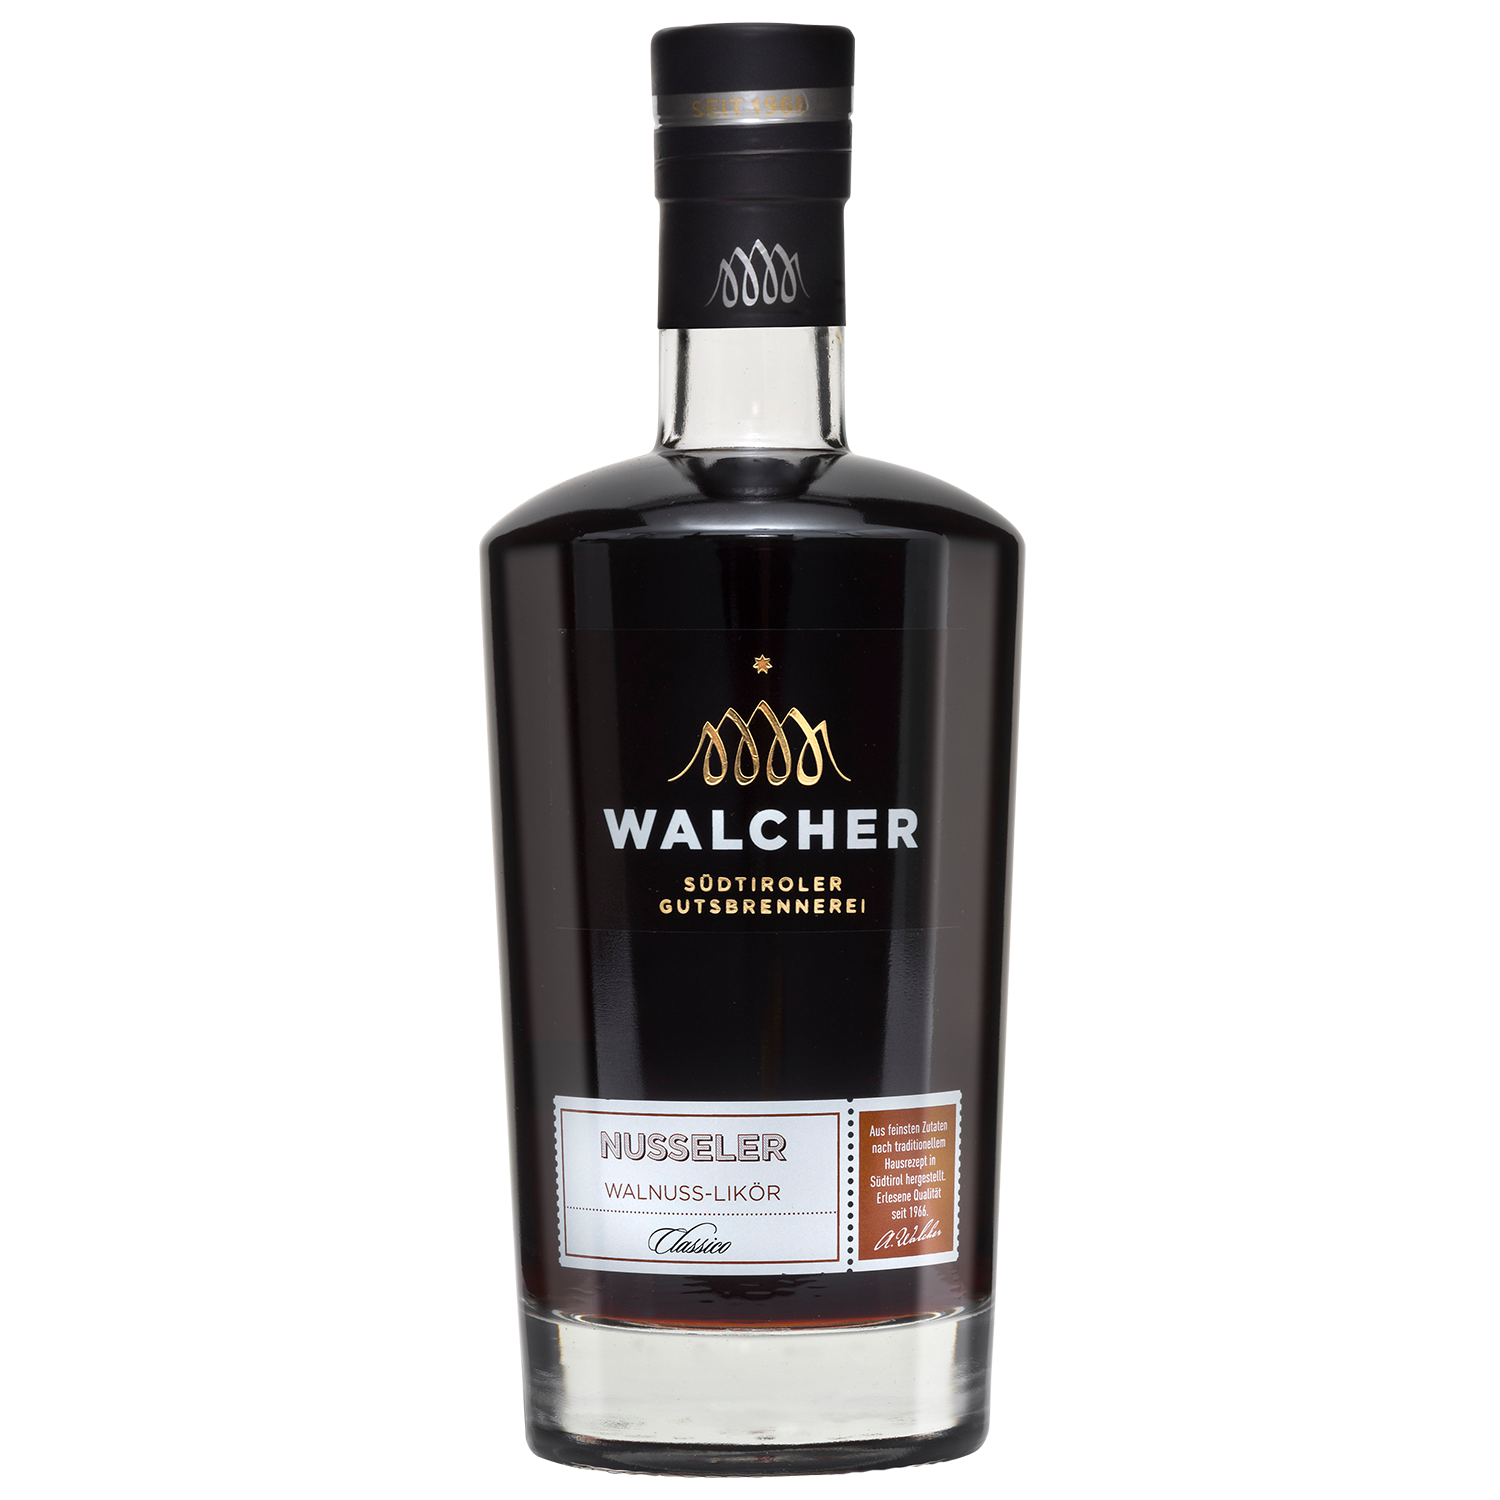 Nusseler Walnut Liqueur in 700ml bottle by Walcher